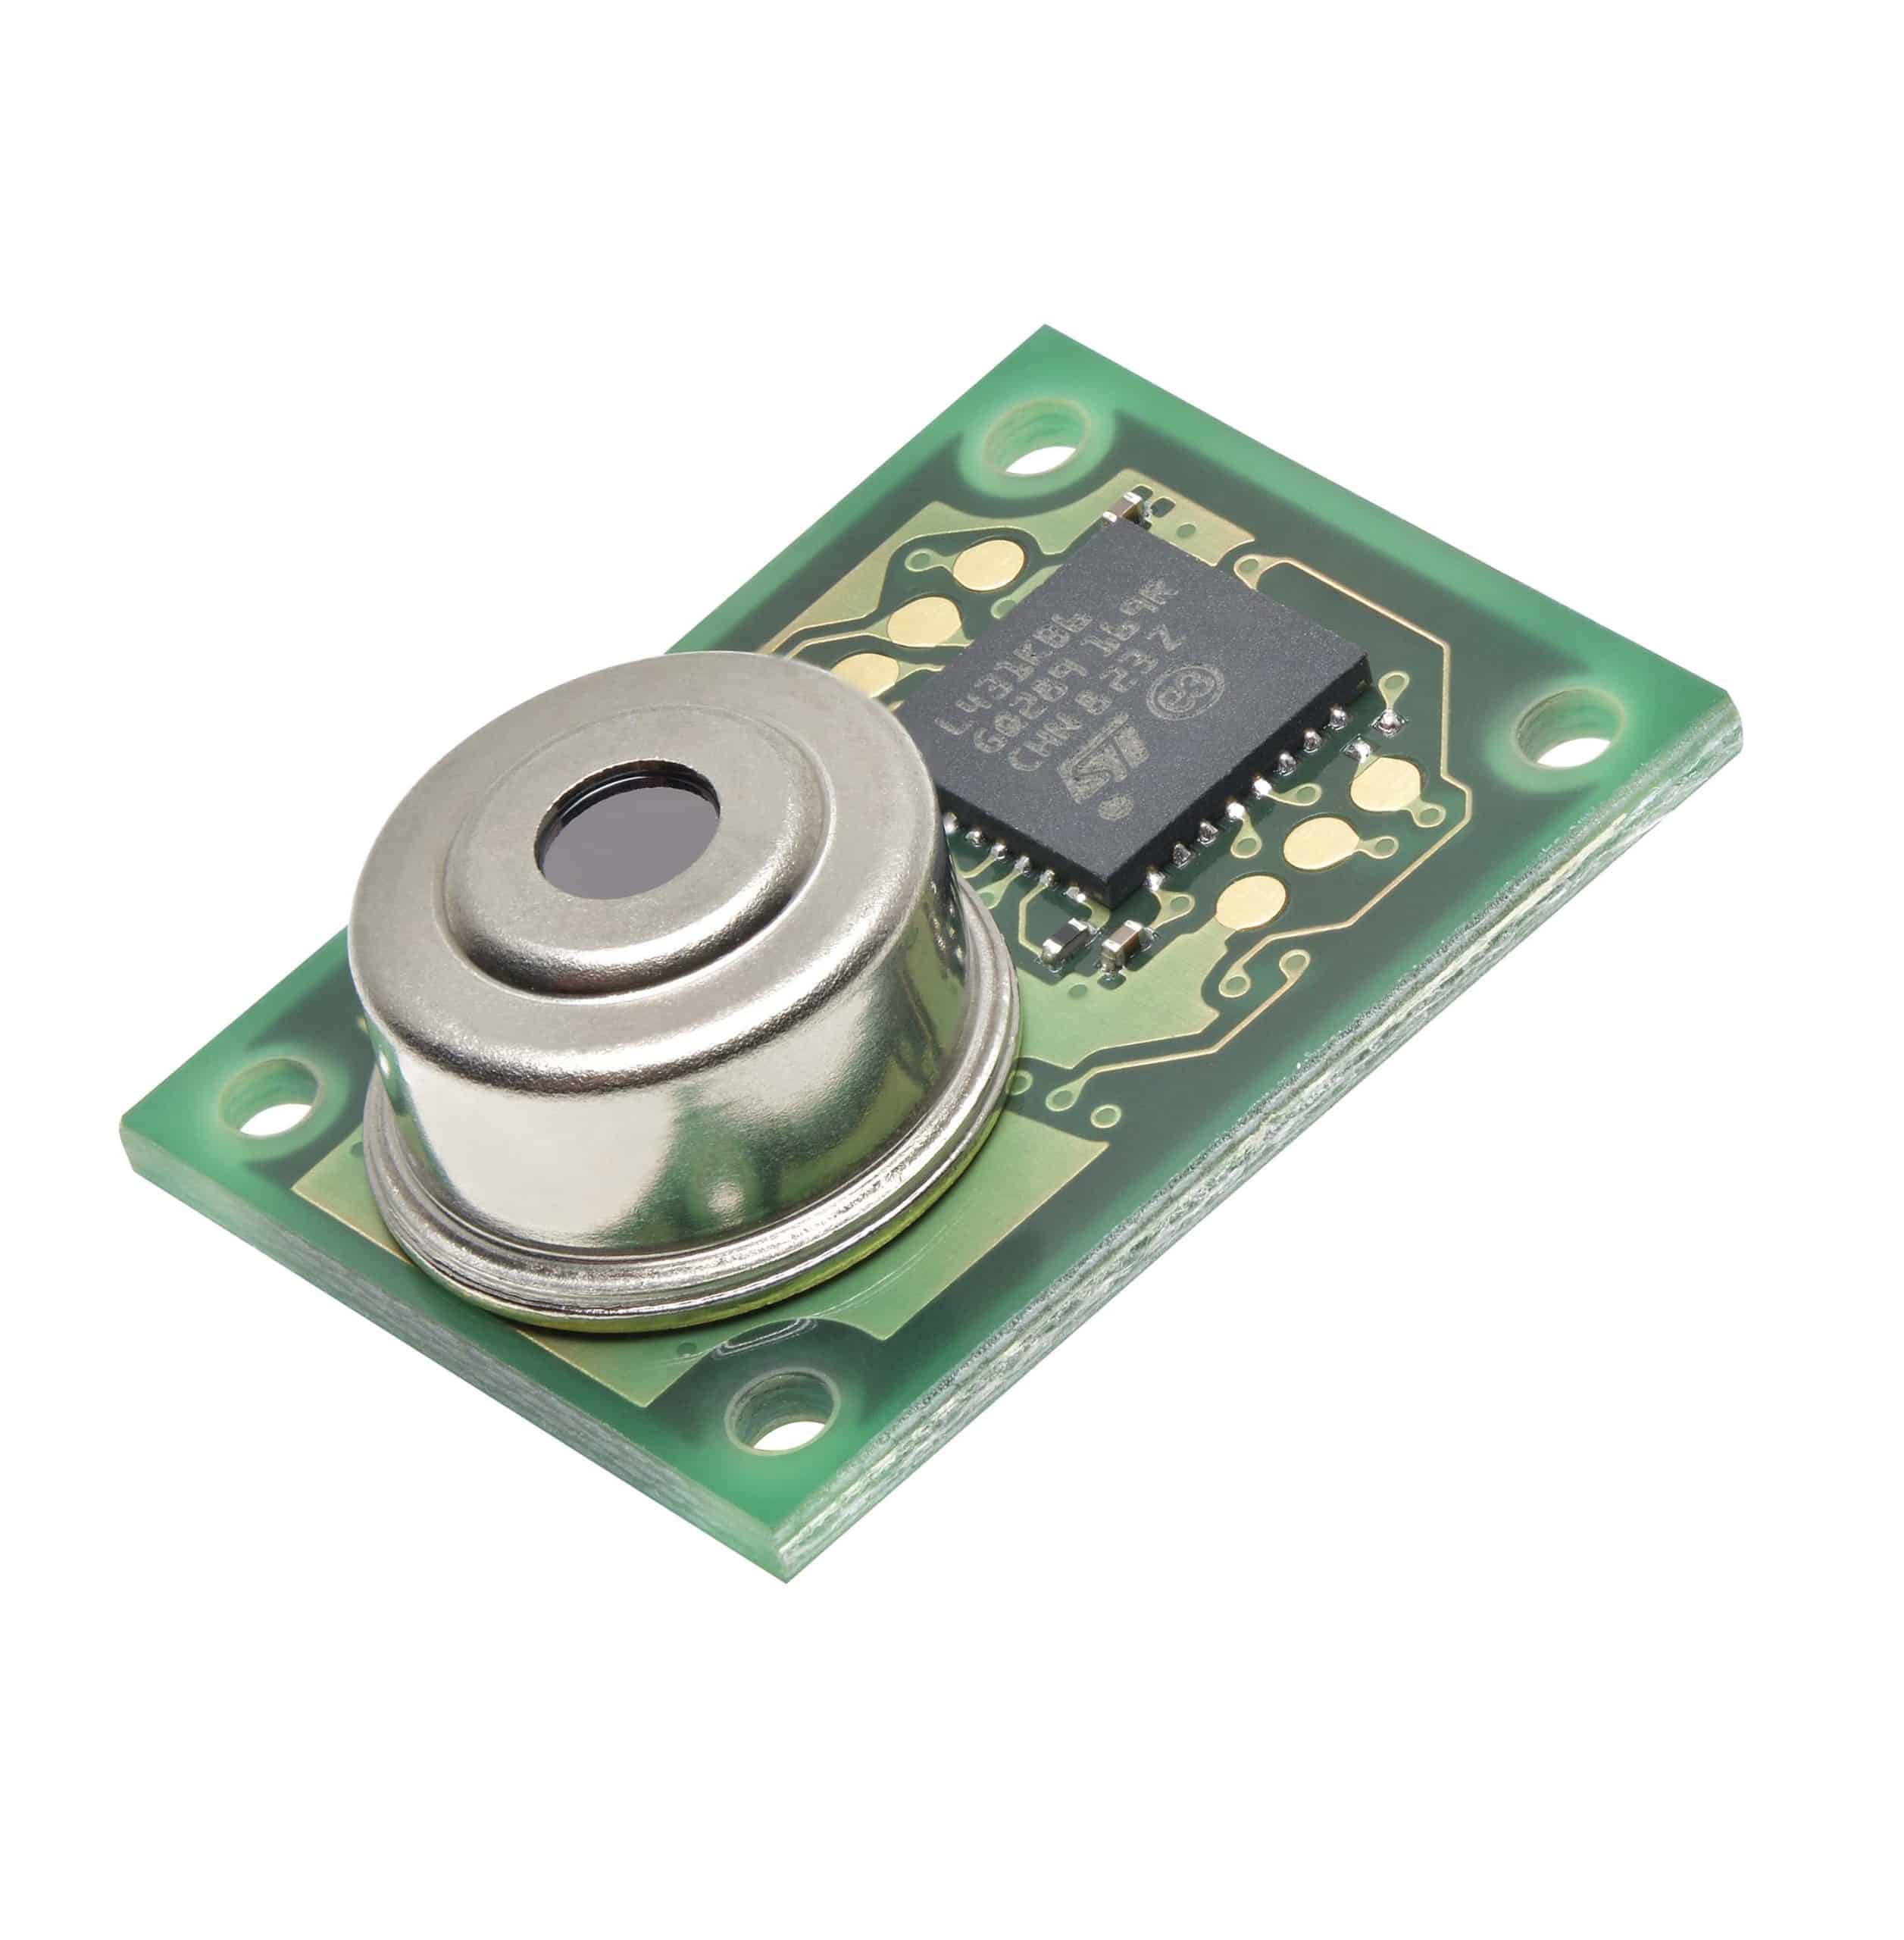 Ntc Temperature Sensor(DKTS0012)